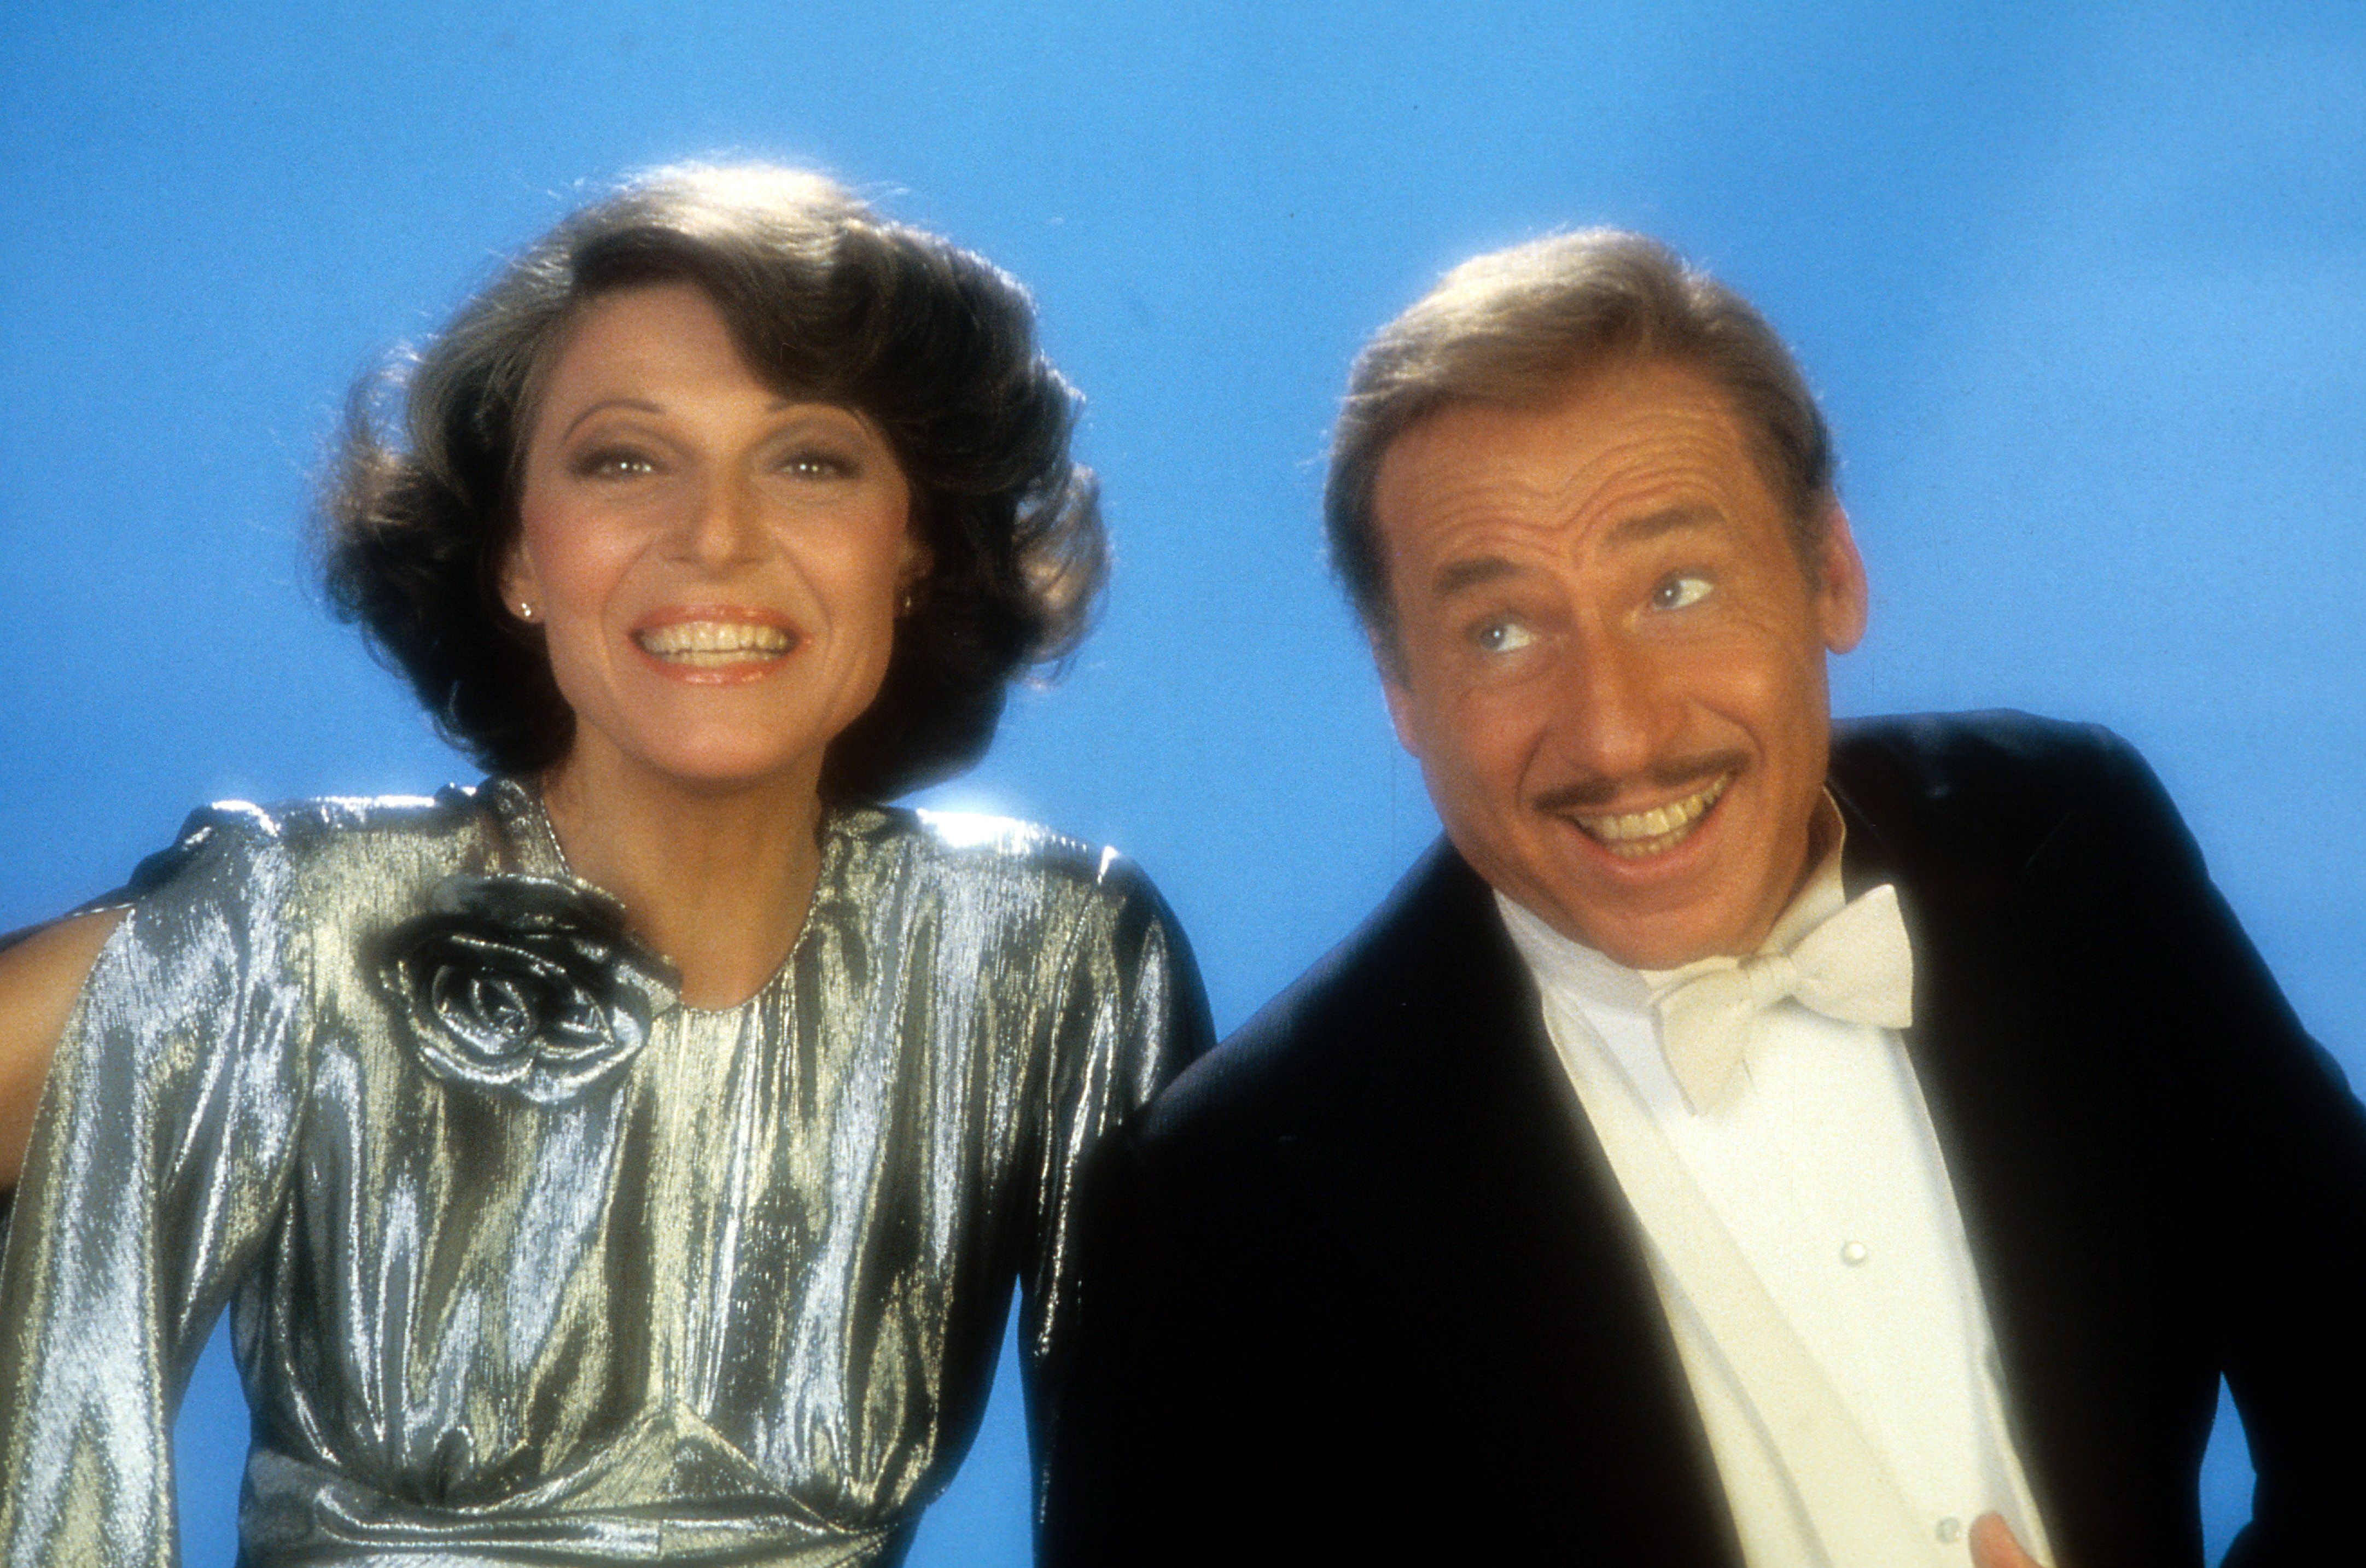 Anne Bancroft et Mel Brooks sourient pour une photo publicitaire en 1983. | Source : Getty Images